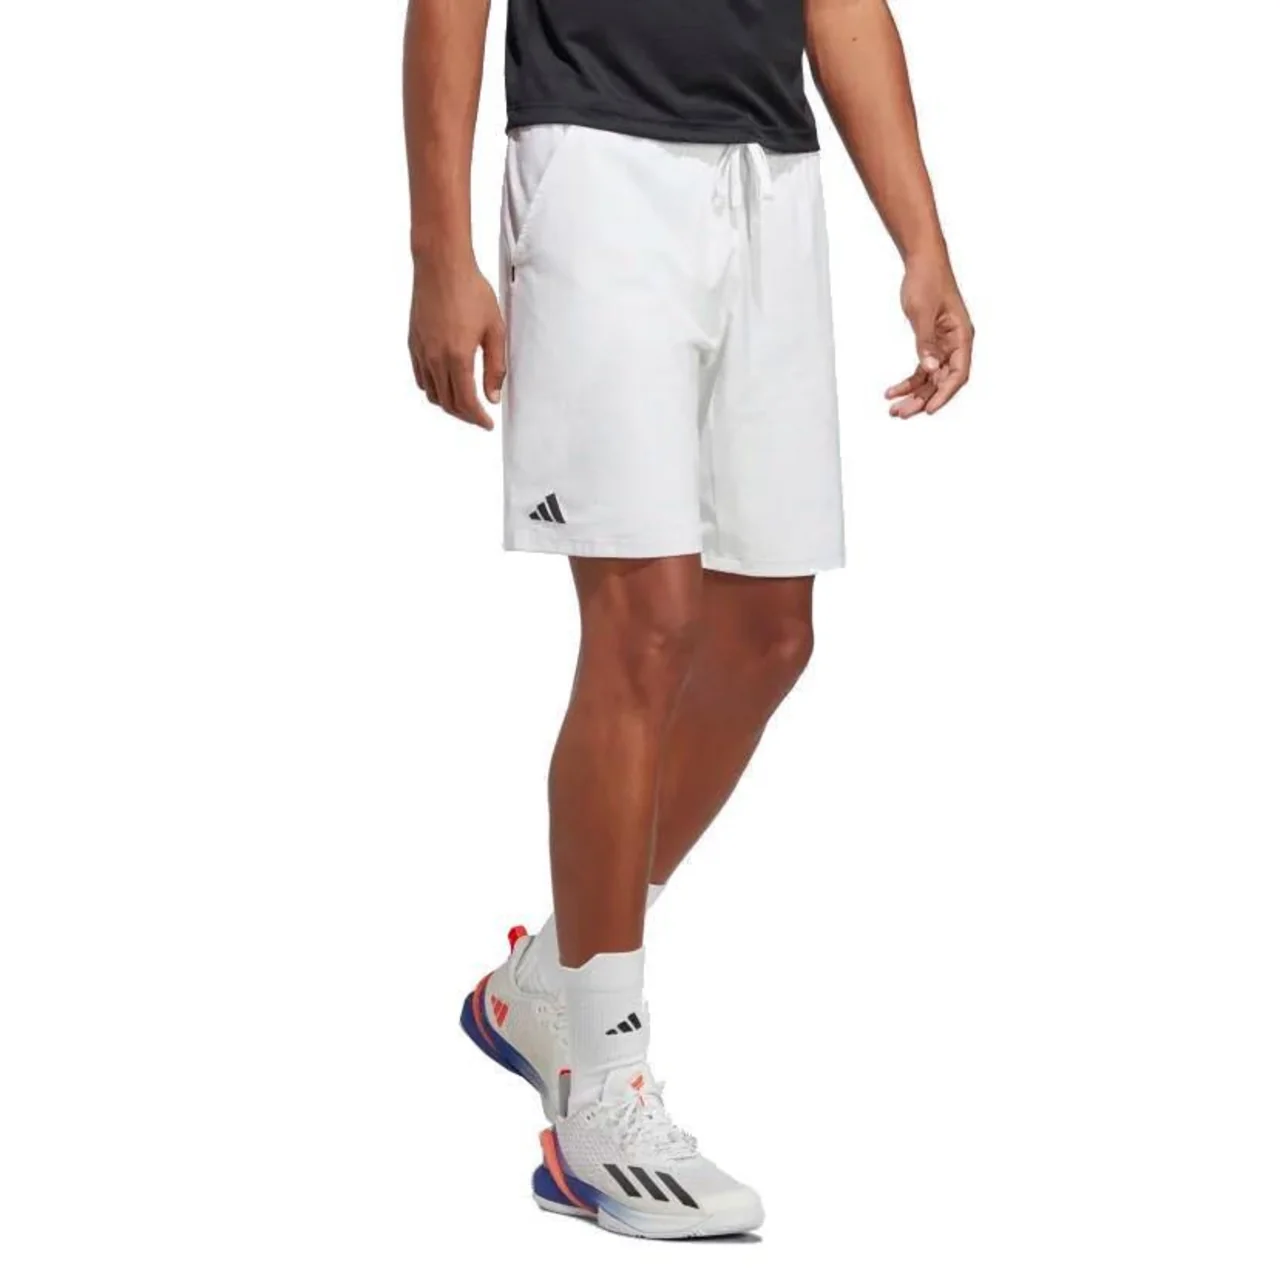 Adidas Ergo Tennis Shorts White